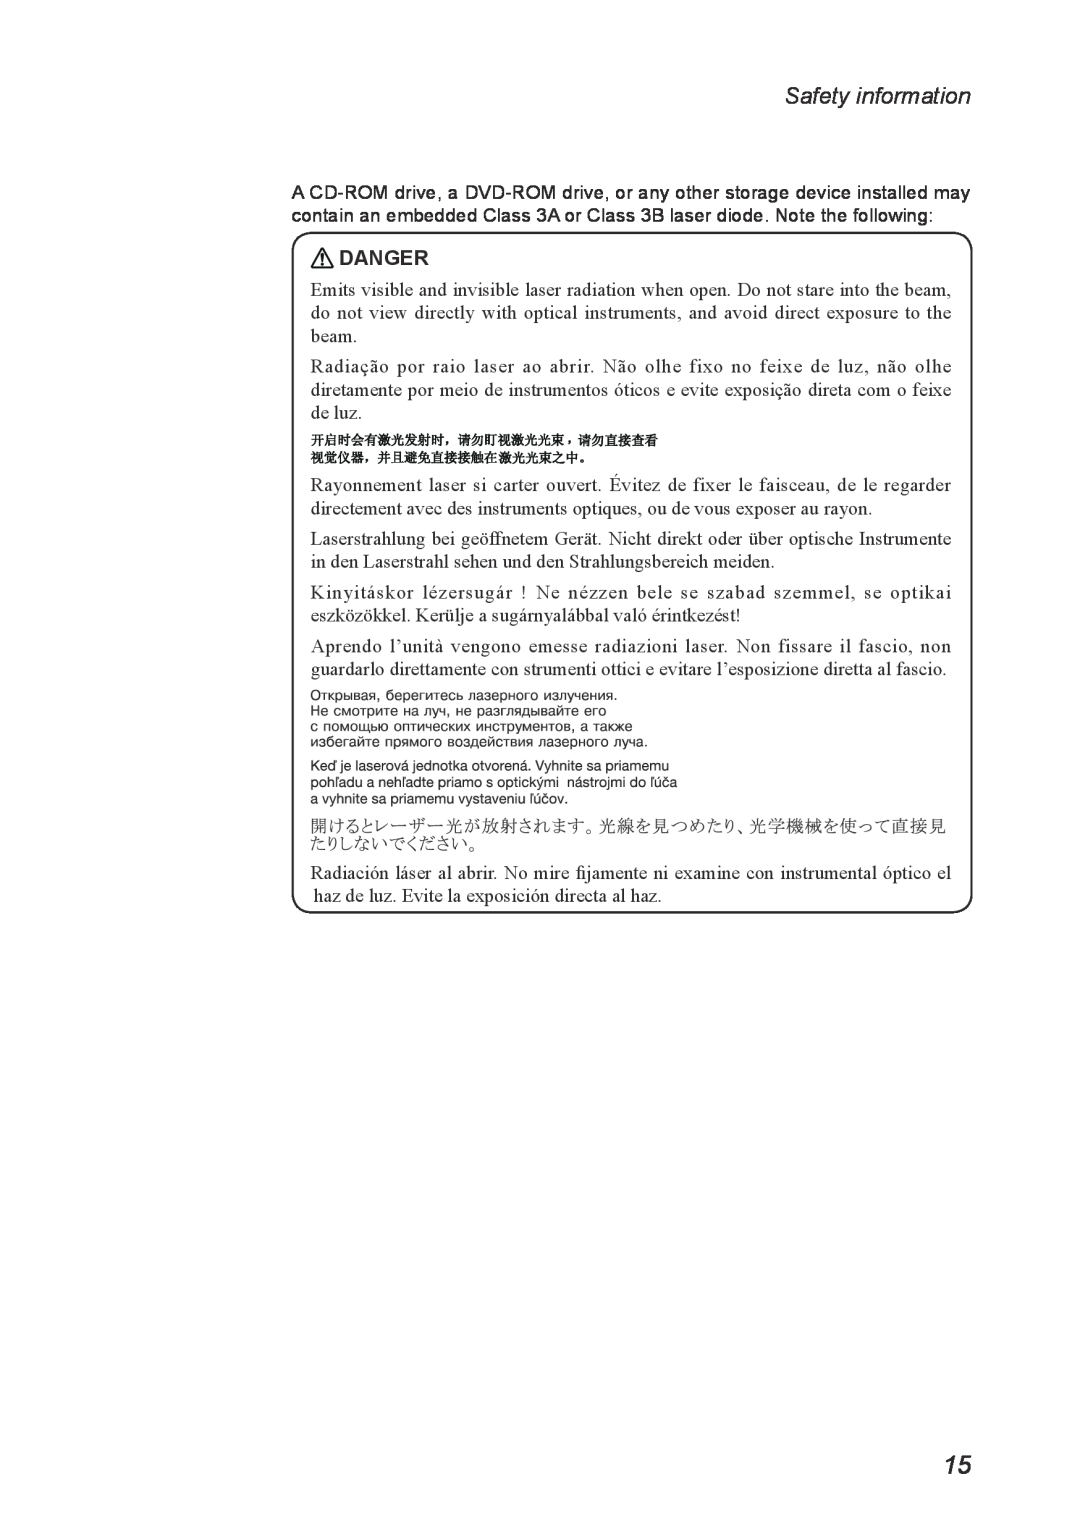 Lenovo U260 manual Danger, Safety information 